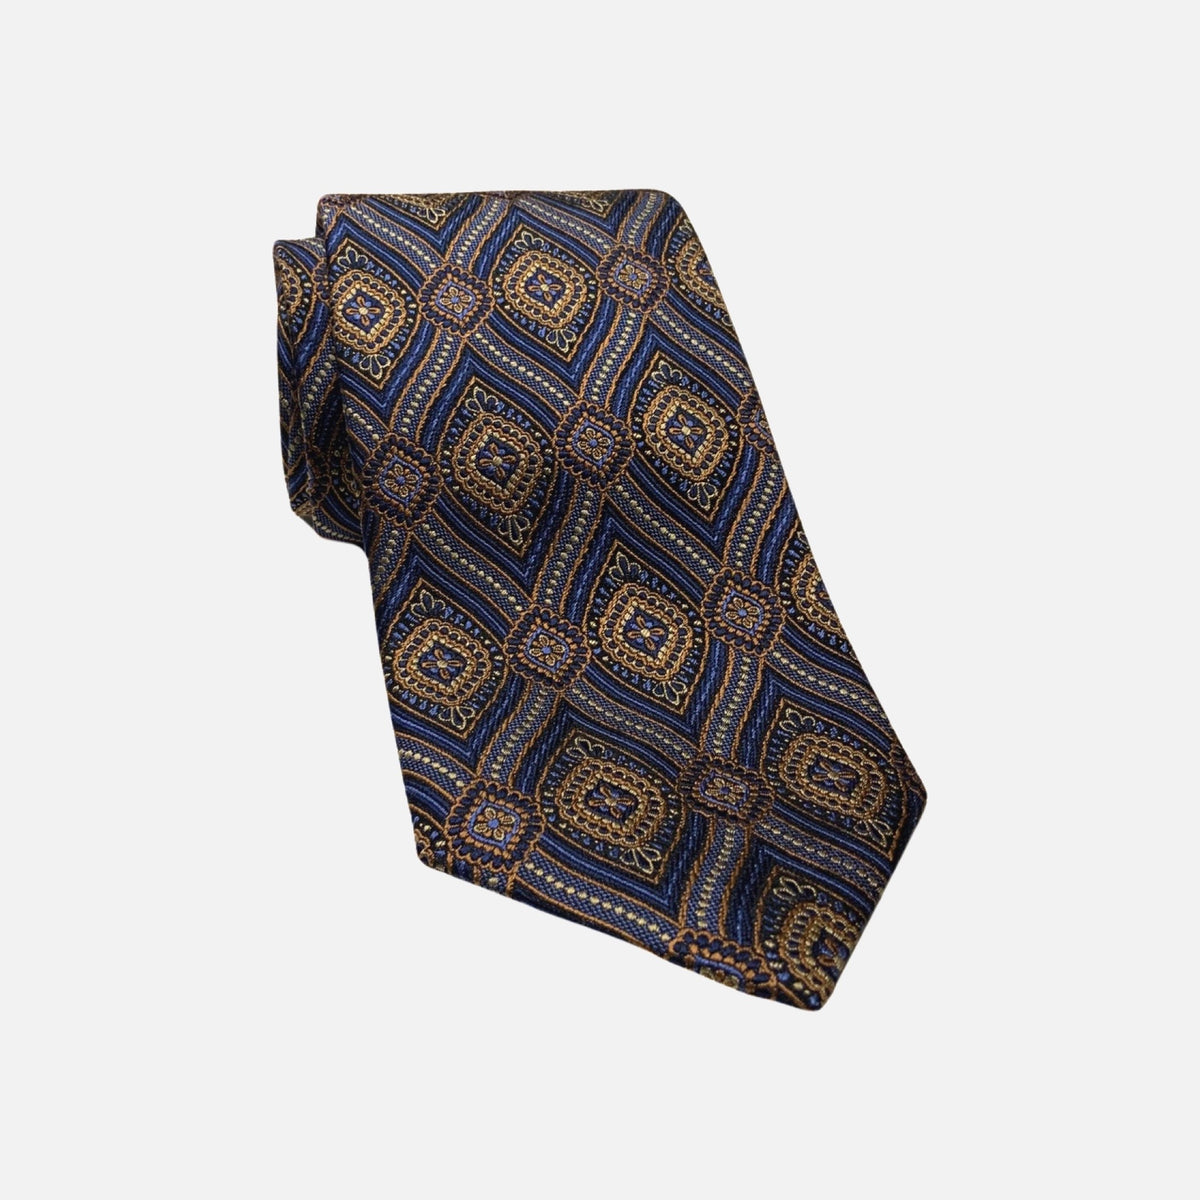 JZ Richards premium silk tie made in USA